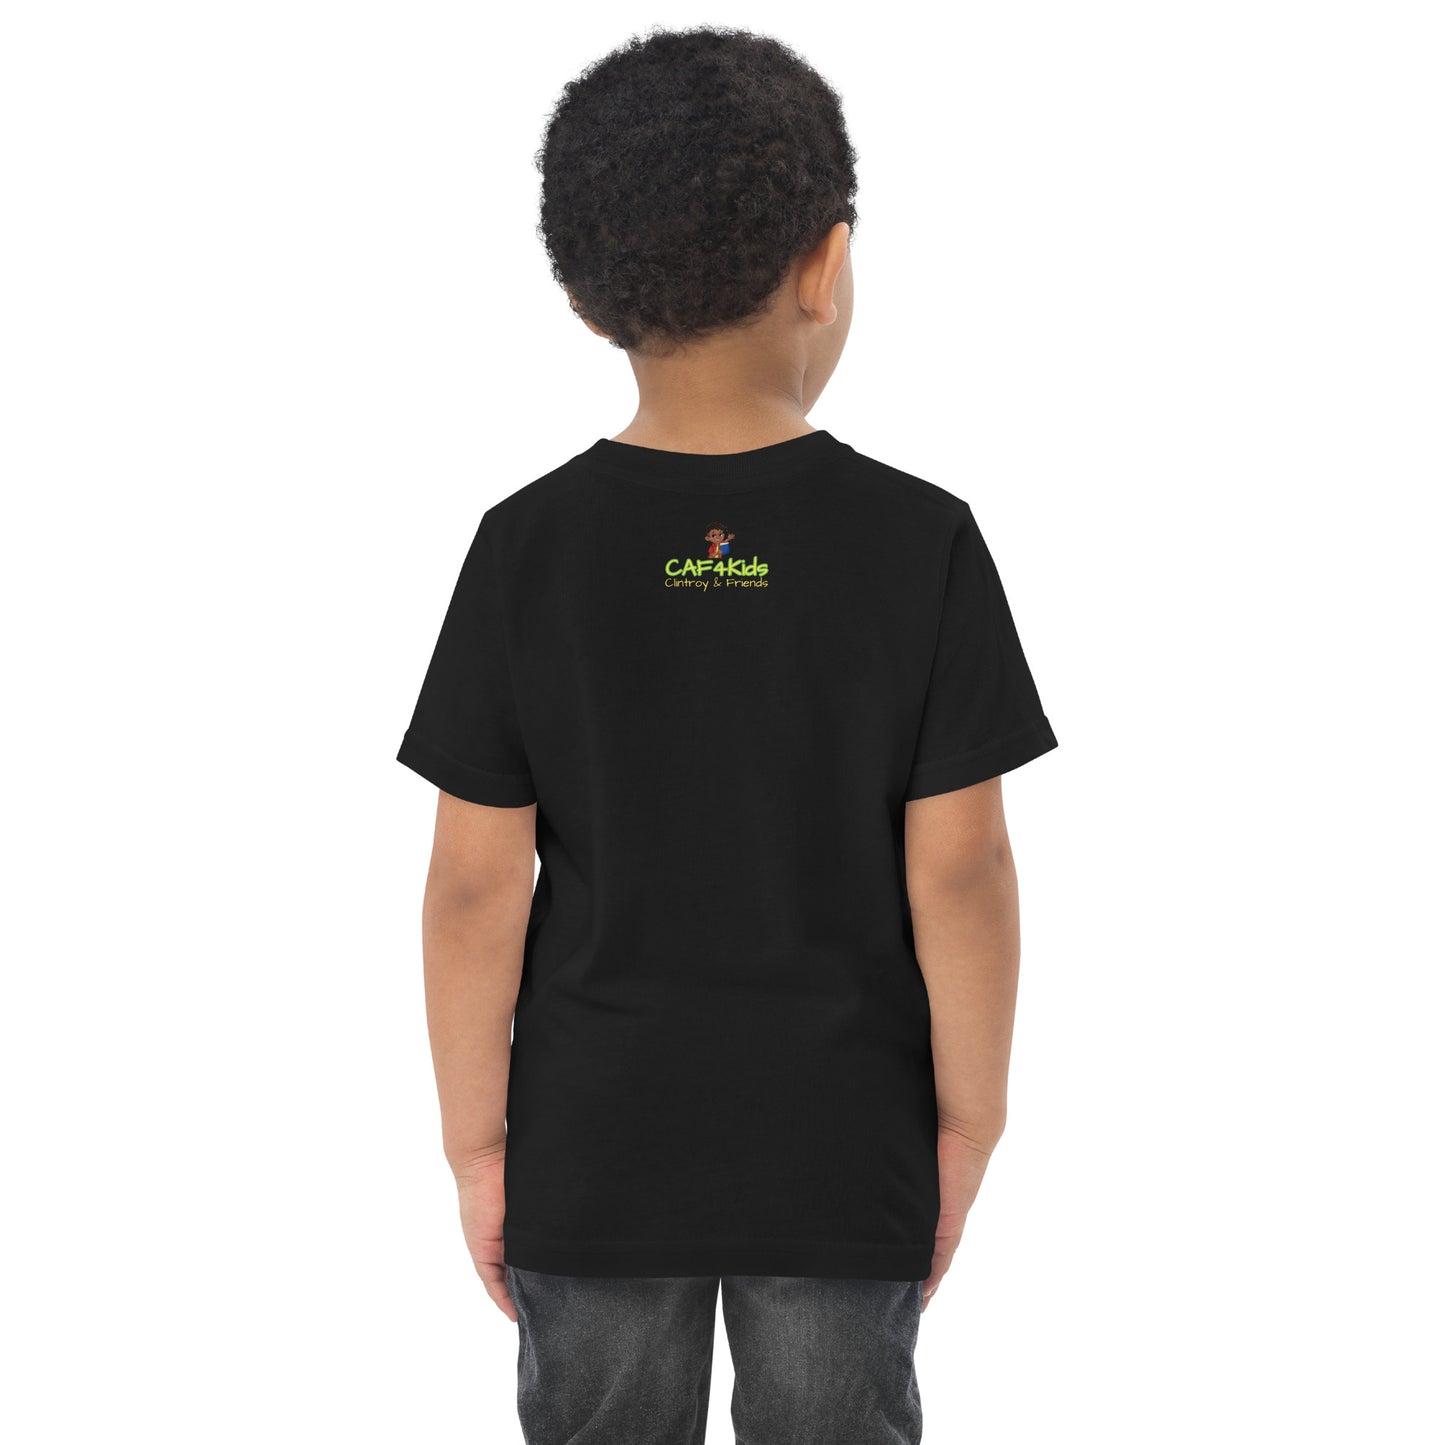 CAF4Kids Black Toddler T-shirt - Letter Y